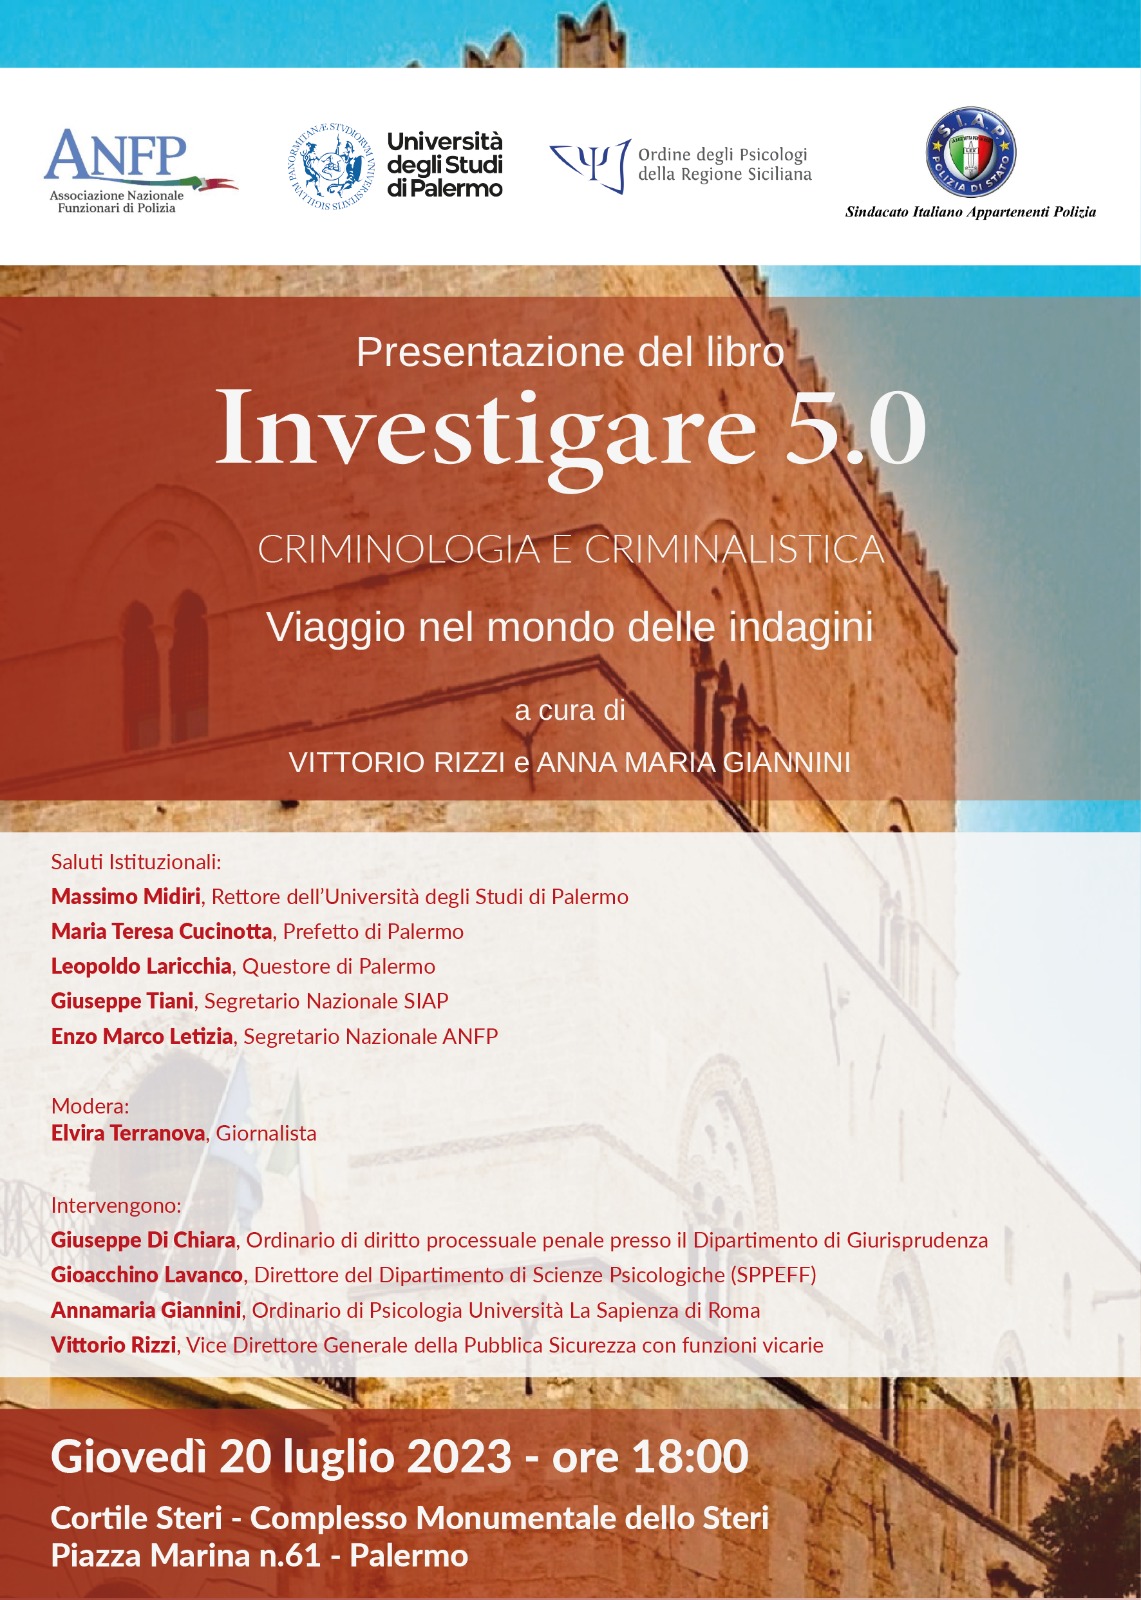 INVESTIGARE 5.0 A CURA DI V. RIZZI E A.M. GIANNINI - PRESENTAZIONE TESTO